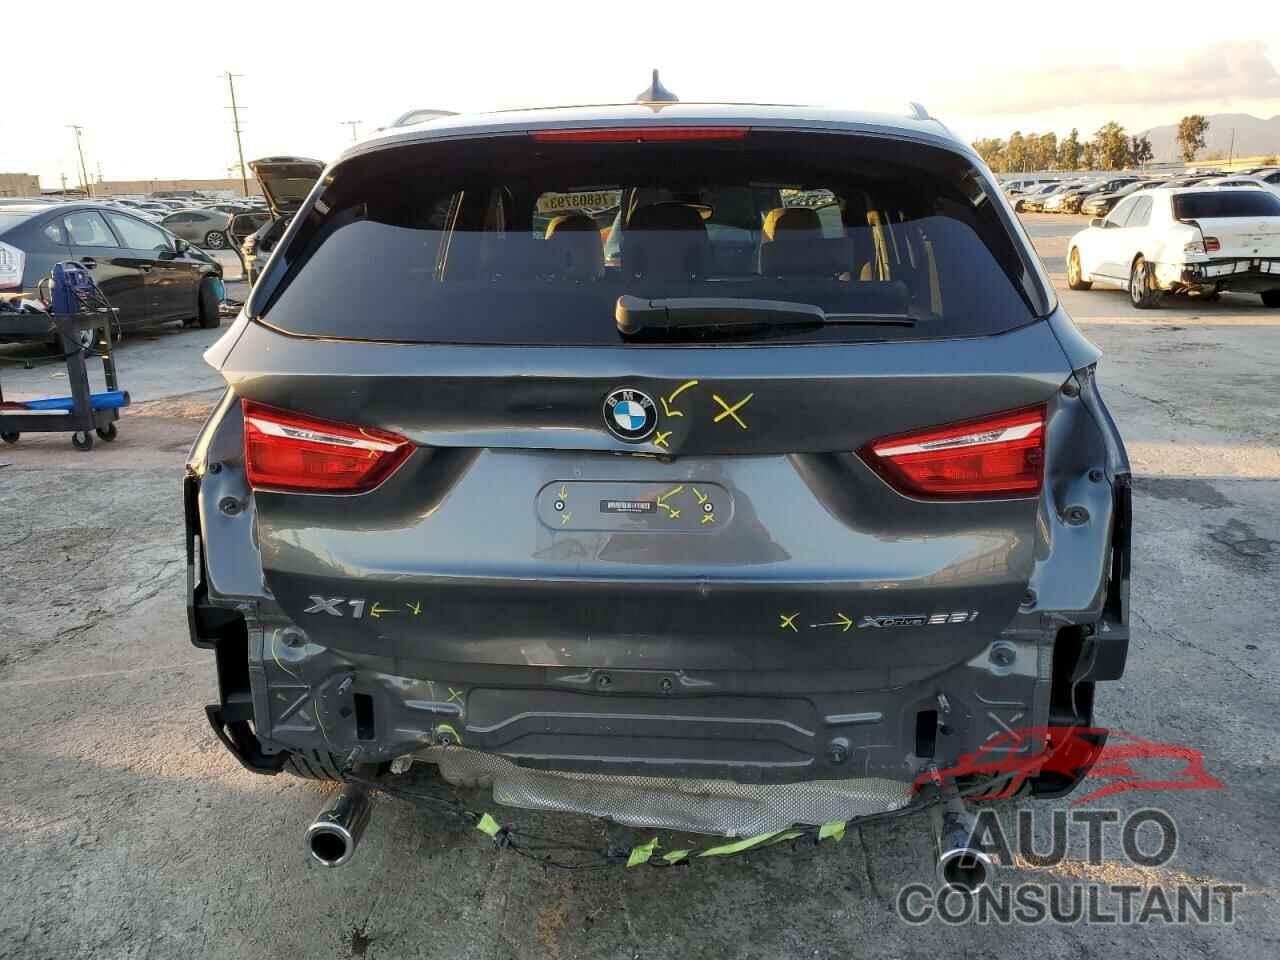 BMW X1 2020 - WBXJG9C0XL5P61869